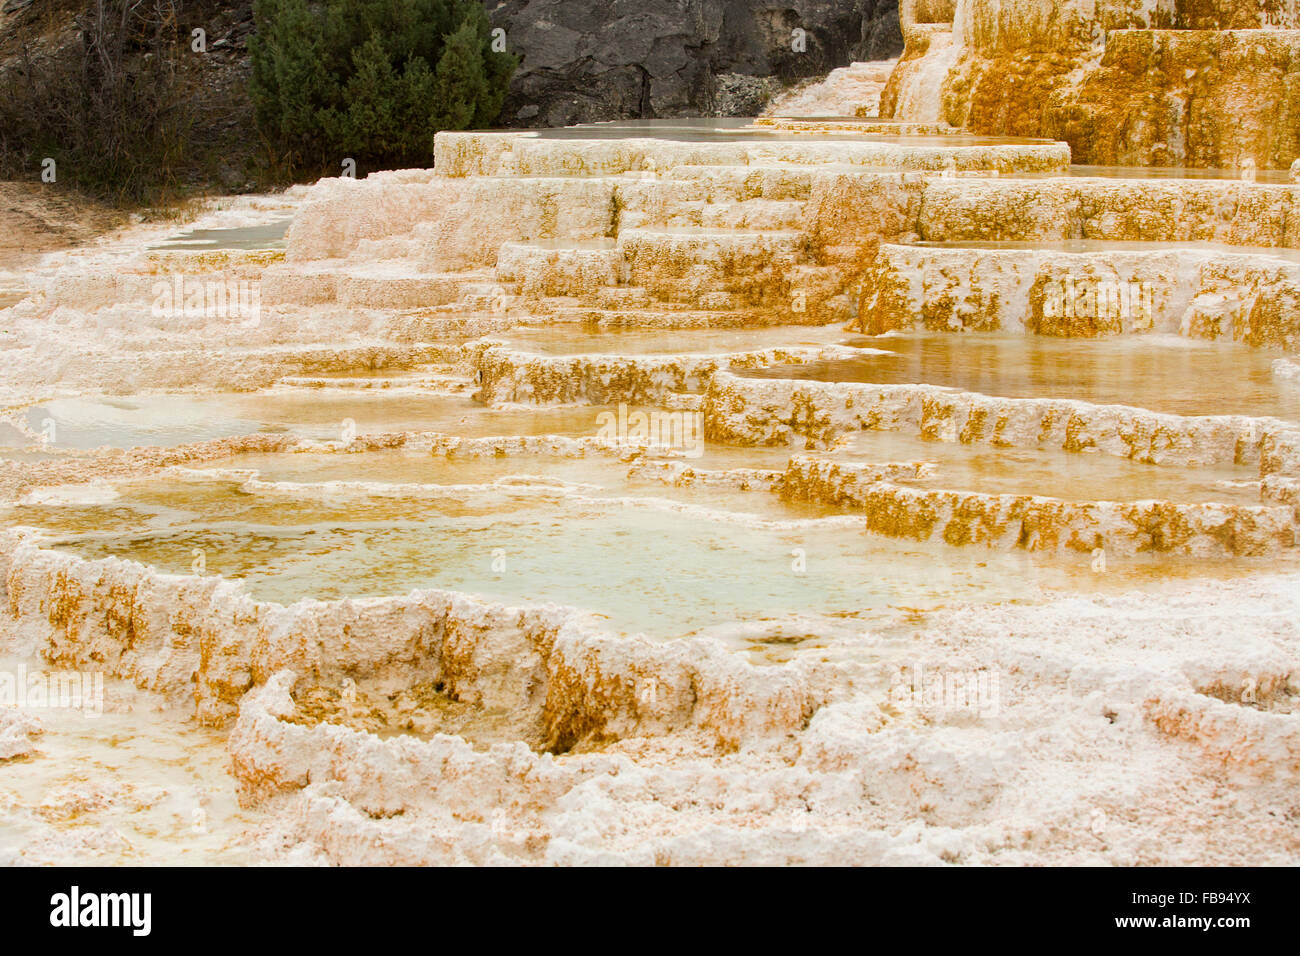 Le flux géothermique de chaud, l'eau riche en carbonate, formulaires, en cascade de calcaire blanc et orange foncé terrasses avec piscines, Yellowstone. Banque D'Images